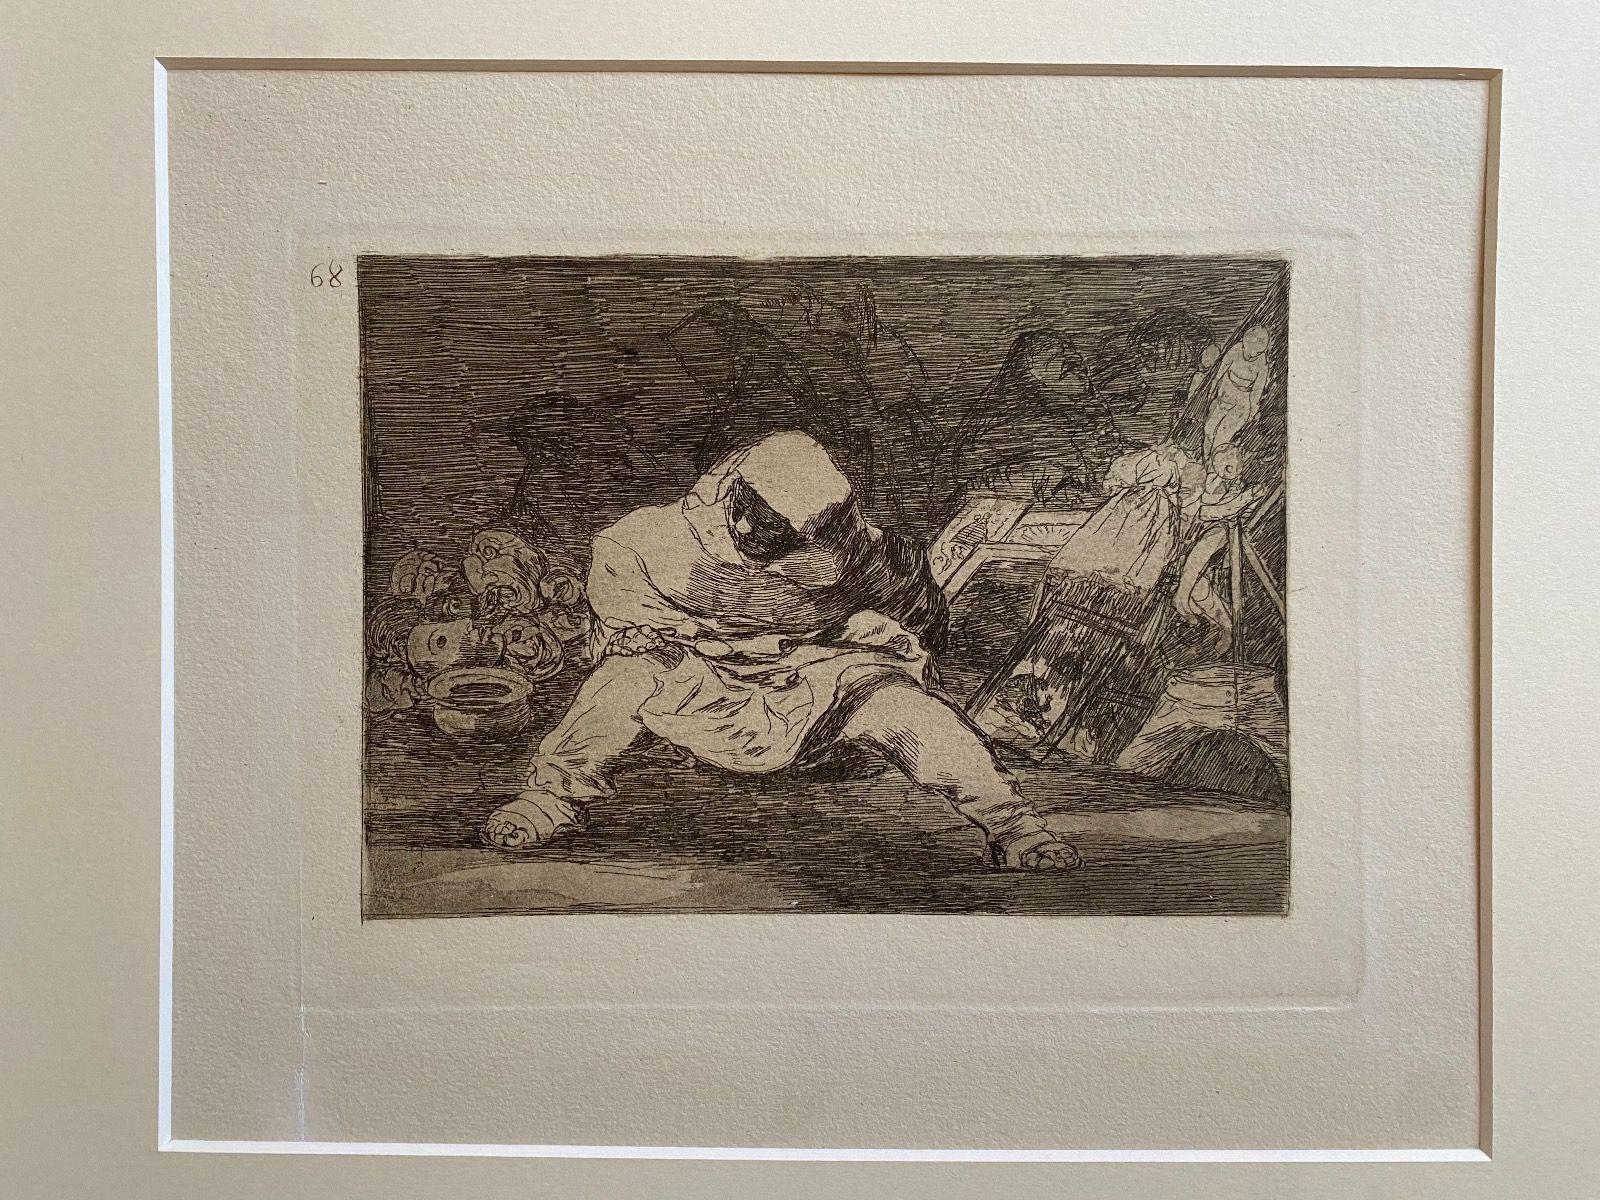 Que Locura  - Tafel 68 aus Los Desastres de la Guerra (Die Katastrophe des Krieges) ist eine originale Schwarz-Weiß-Radierung von Francisco Goya (1746-1828).

Das Kunstwerk ist die Platte Nr. 68 (1815), die 1863 veröffentlicht